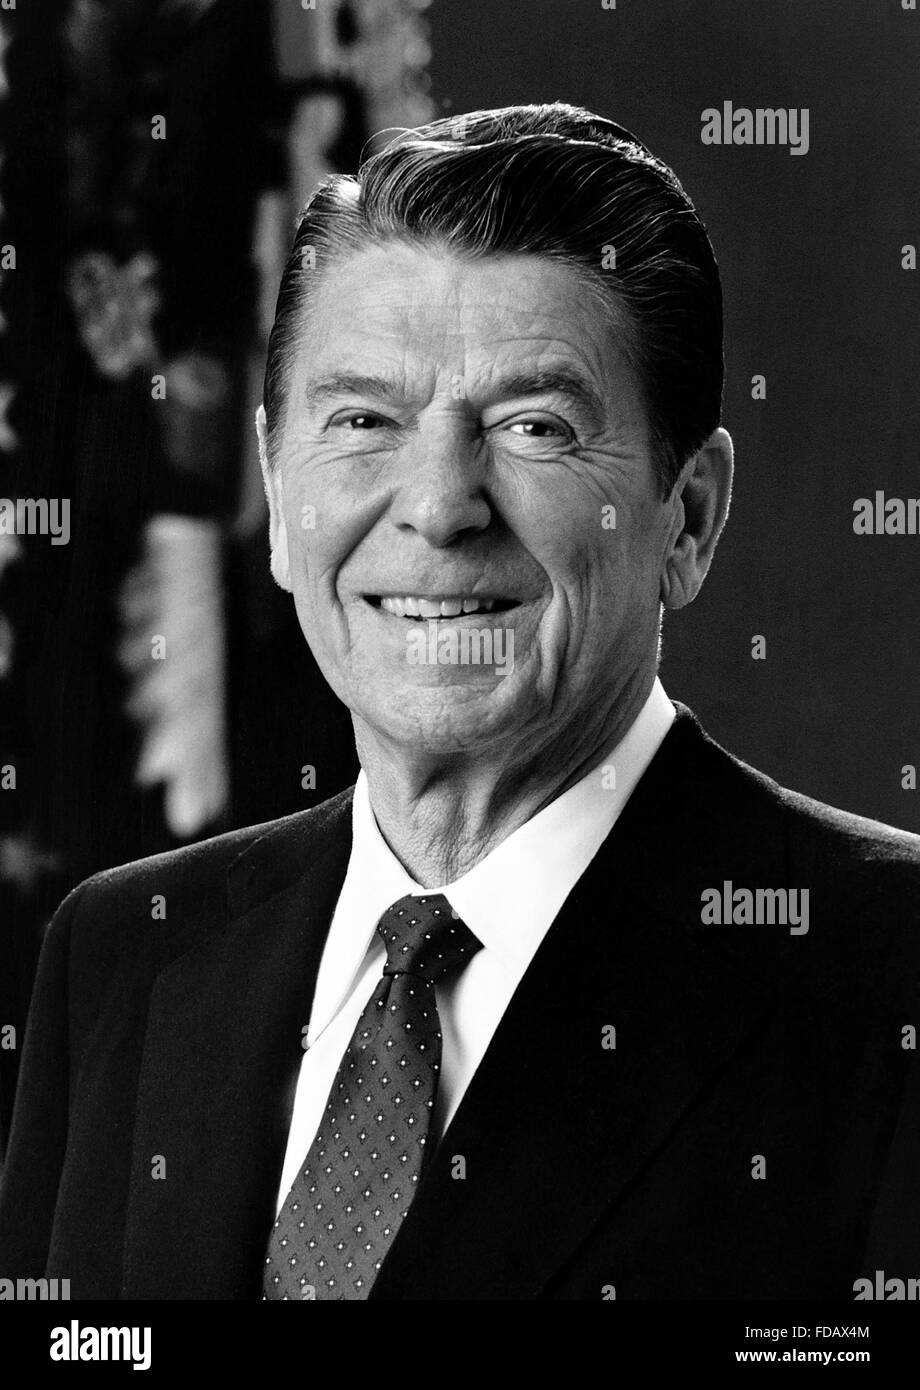 Photo Officiel de la Maison Blanche de Ronald Reagan, le 40e Président des Etats-Unis, c.1981-1983 Banque D'Images